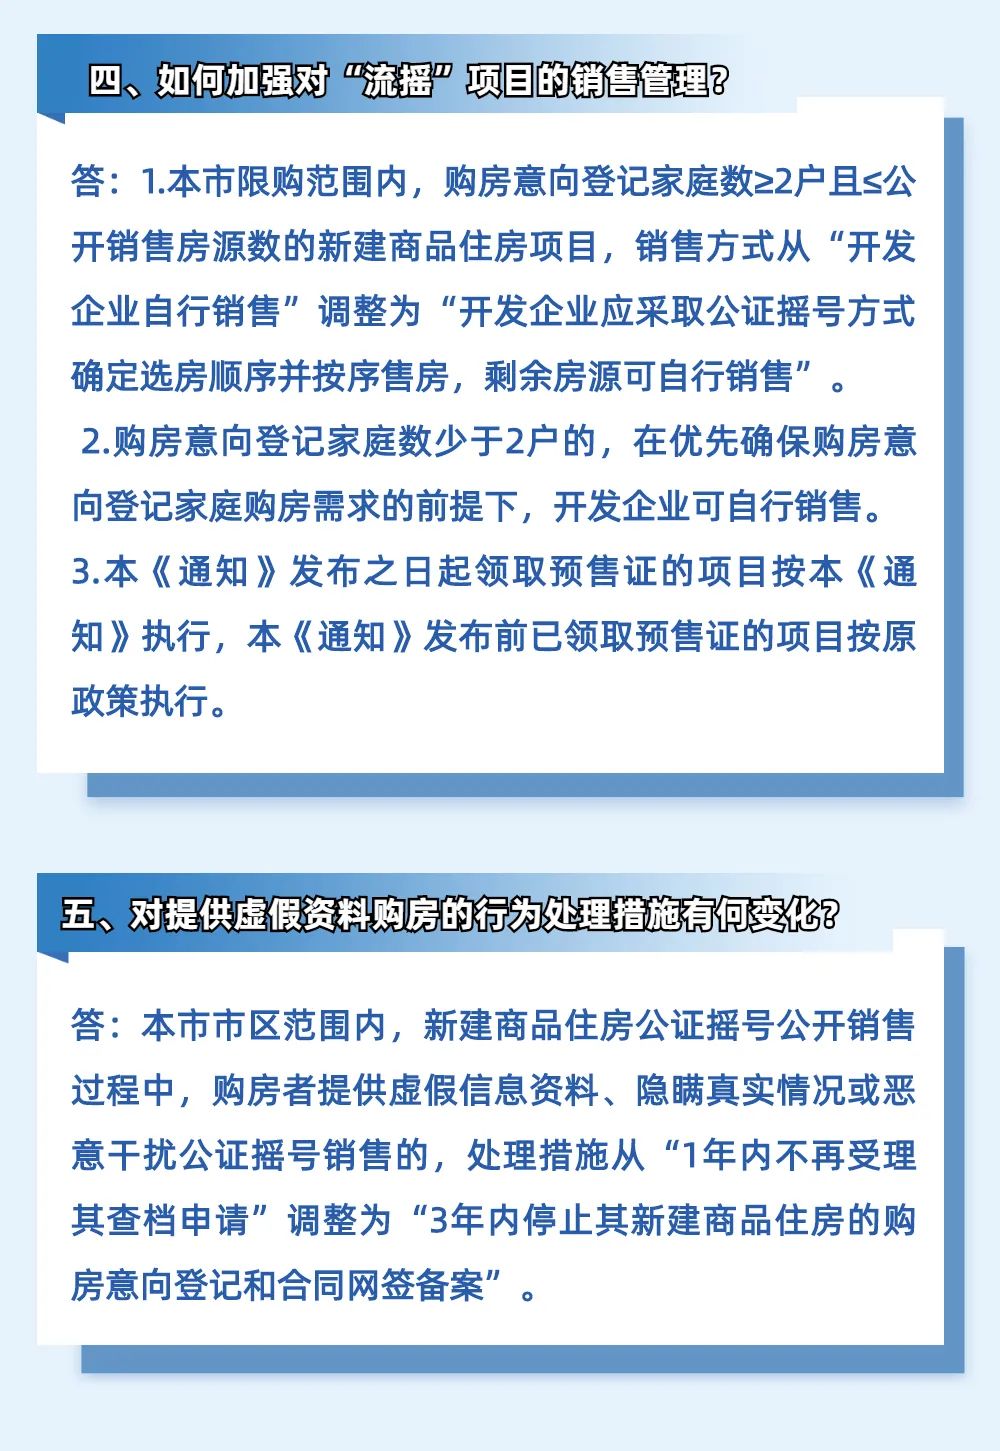 杭州：非户籍家庭社保满4年方可在限购范围内购买1套住房